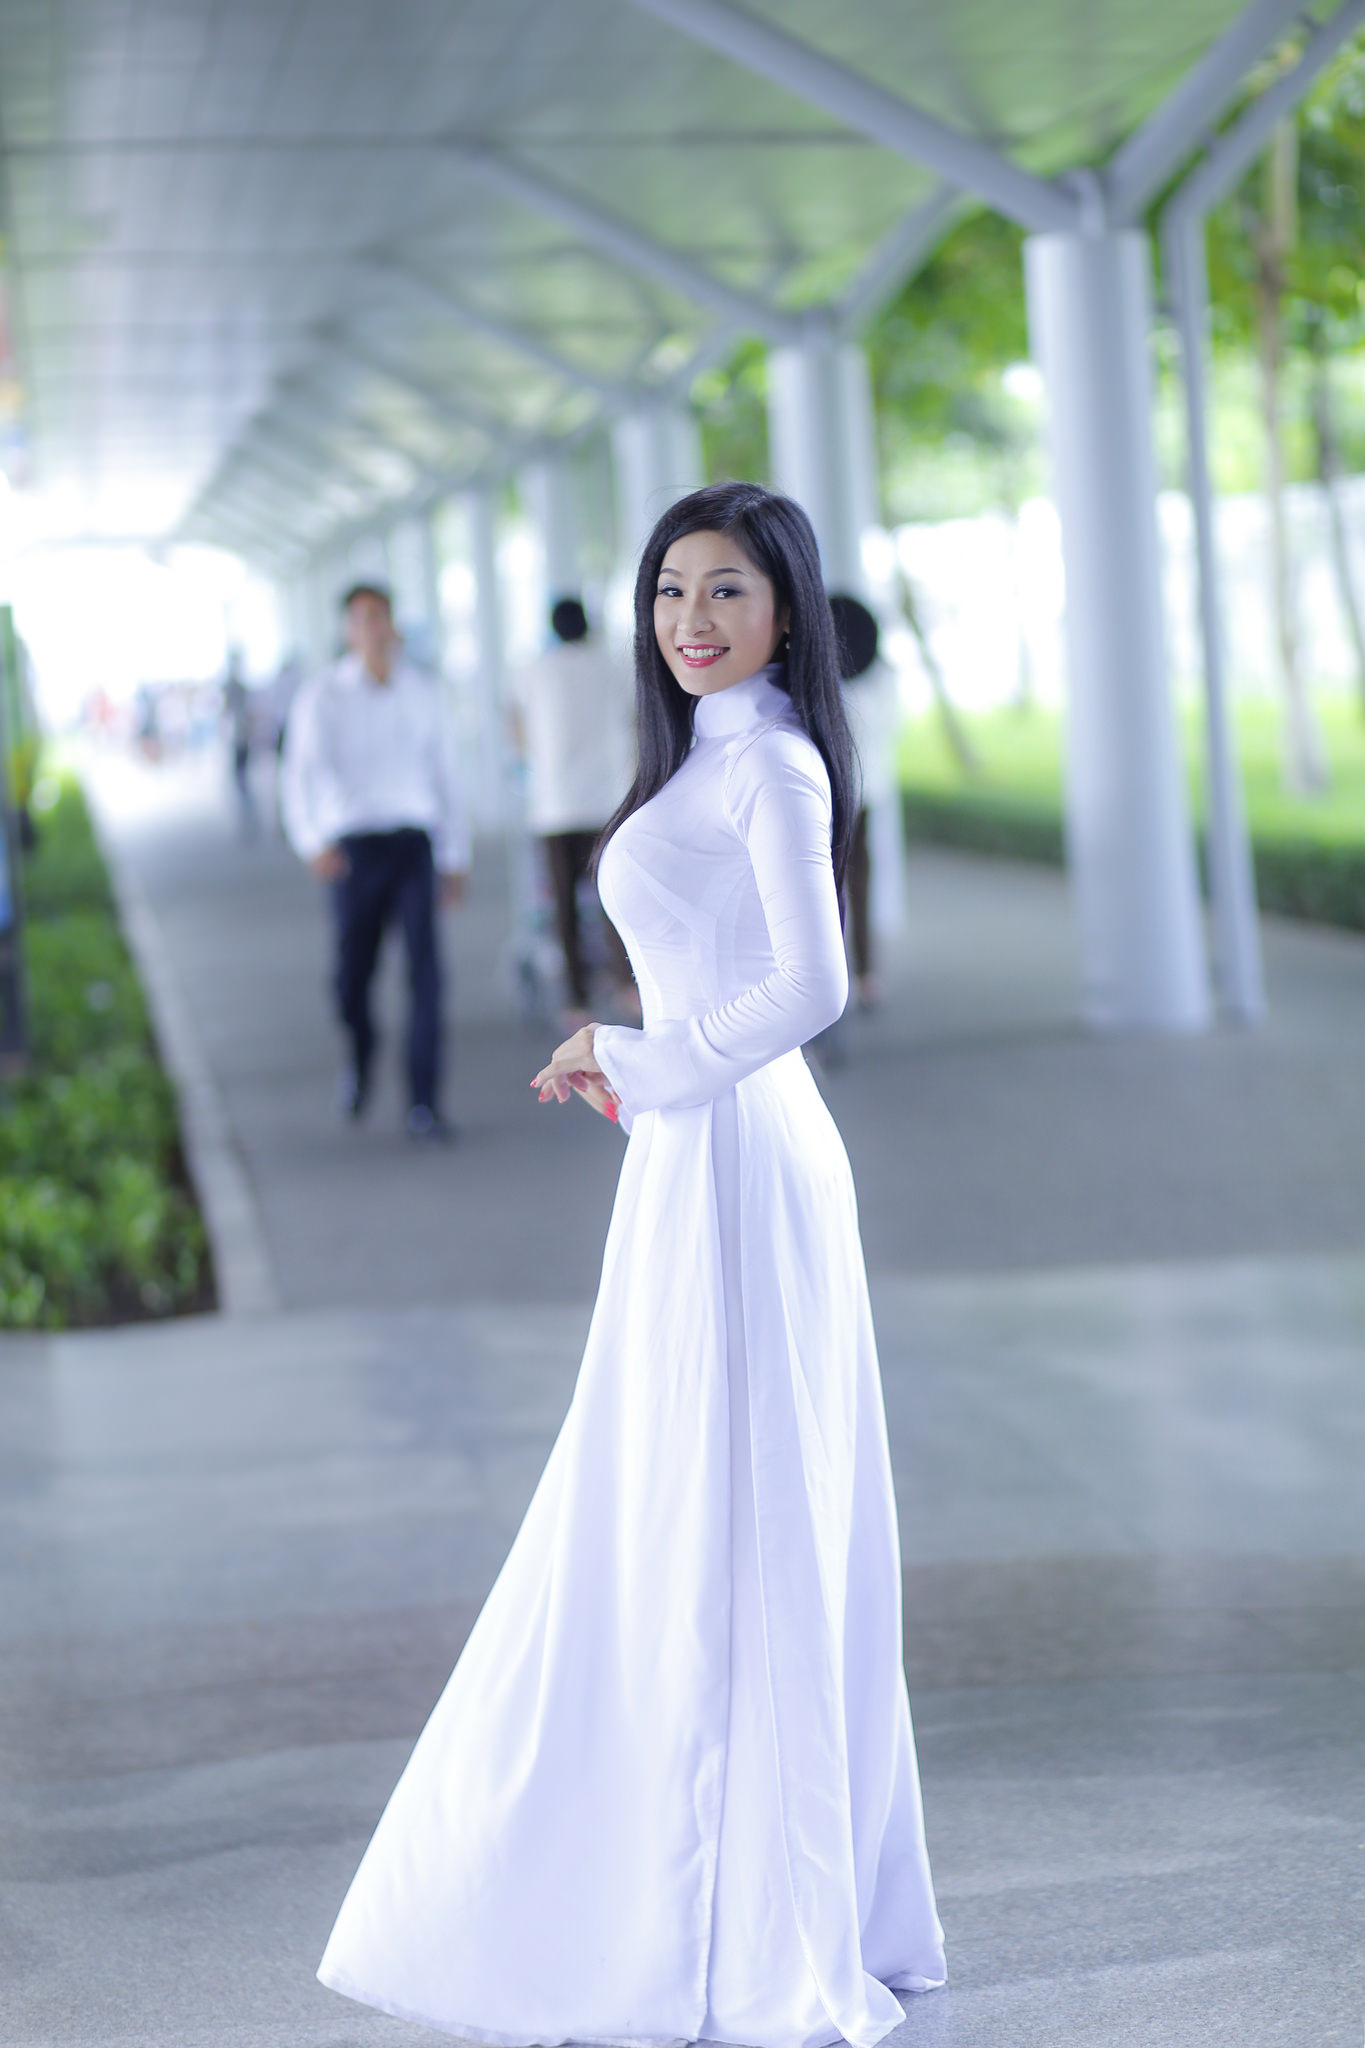 Tuyển tập girl xinh gái đẹp Việt Nam mặc áo dài đẹp mê hồn #67 - 23